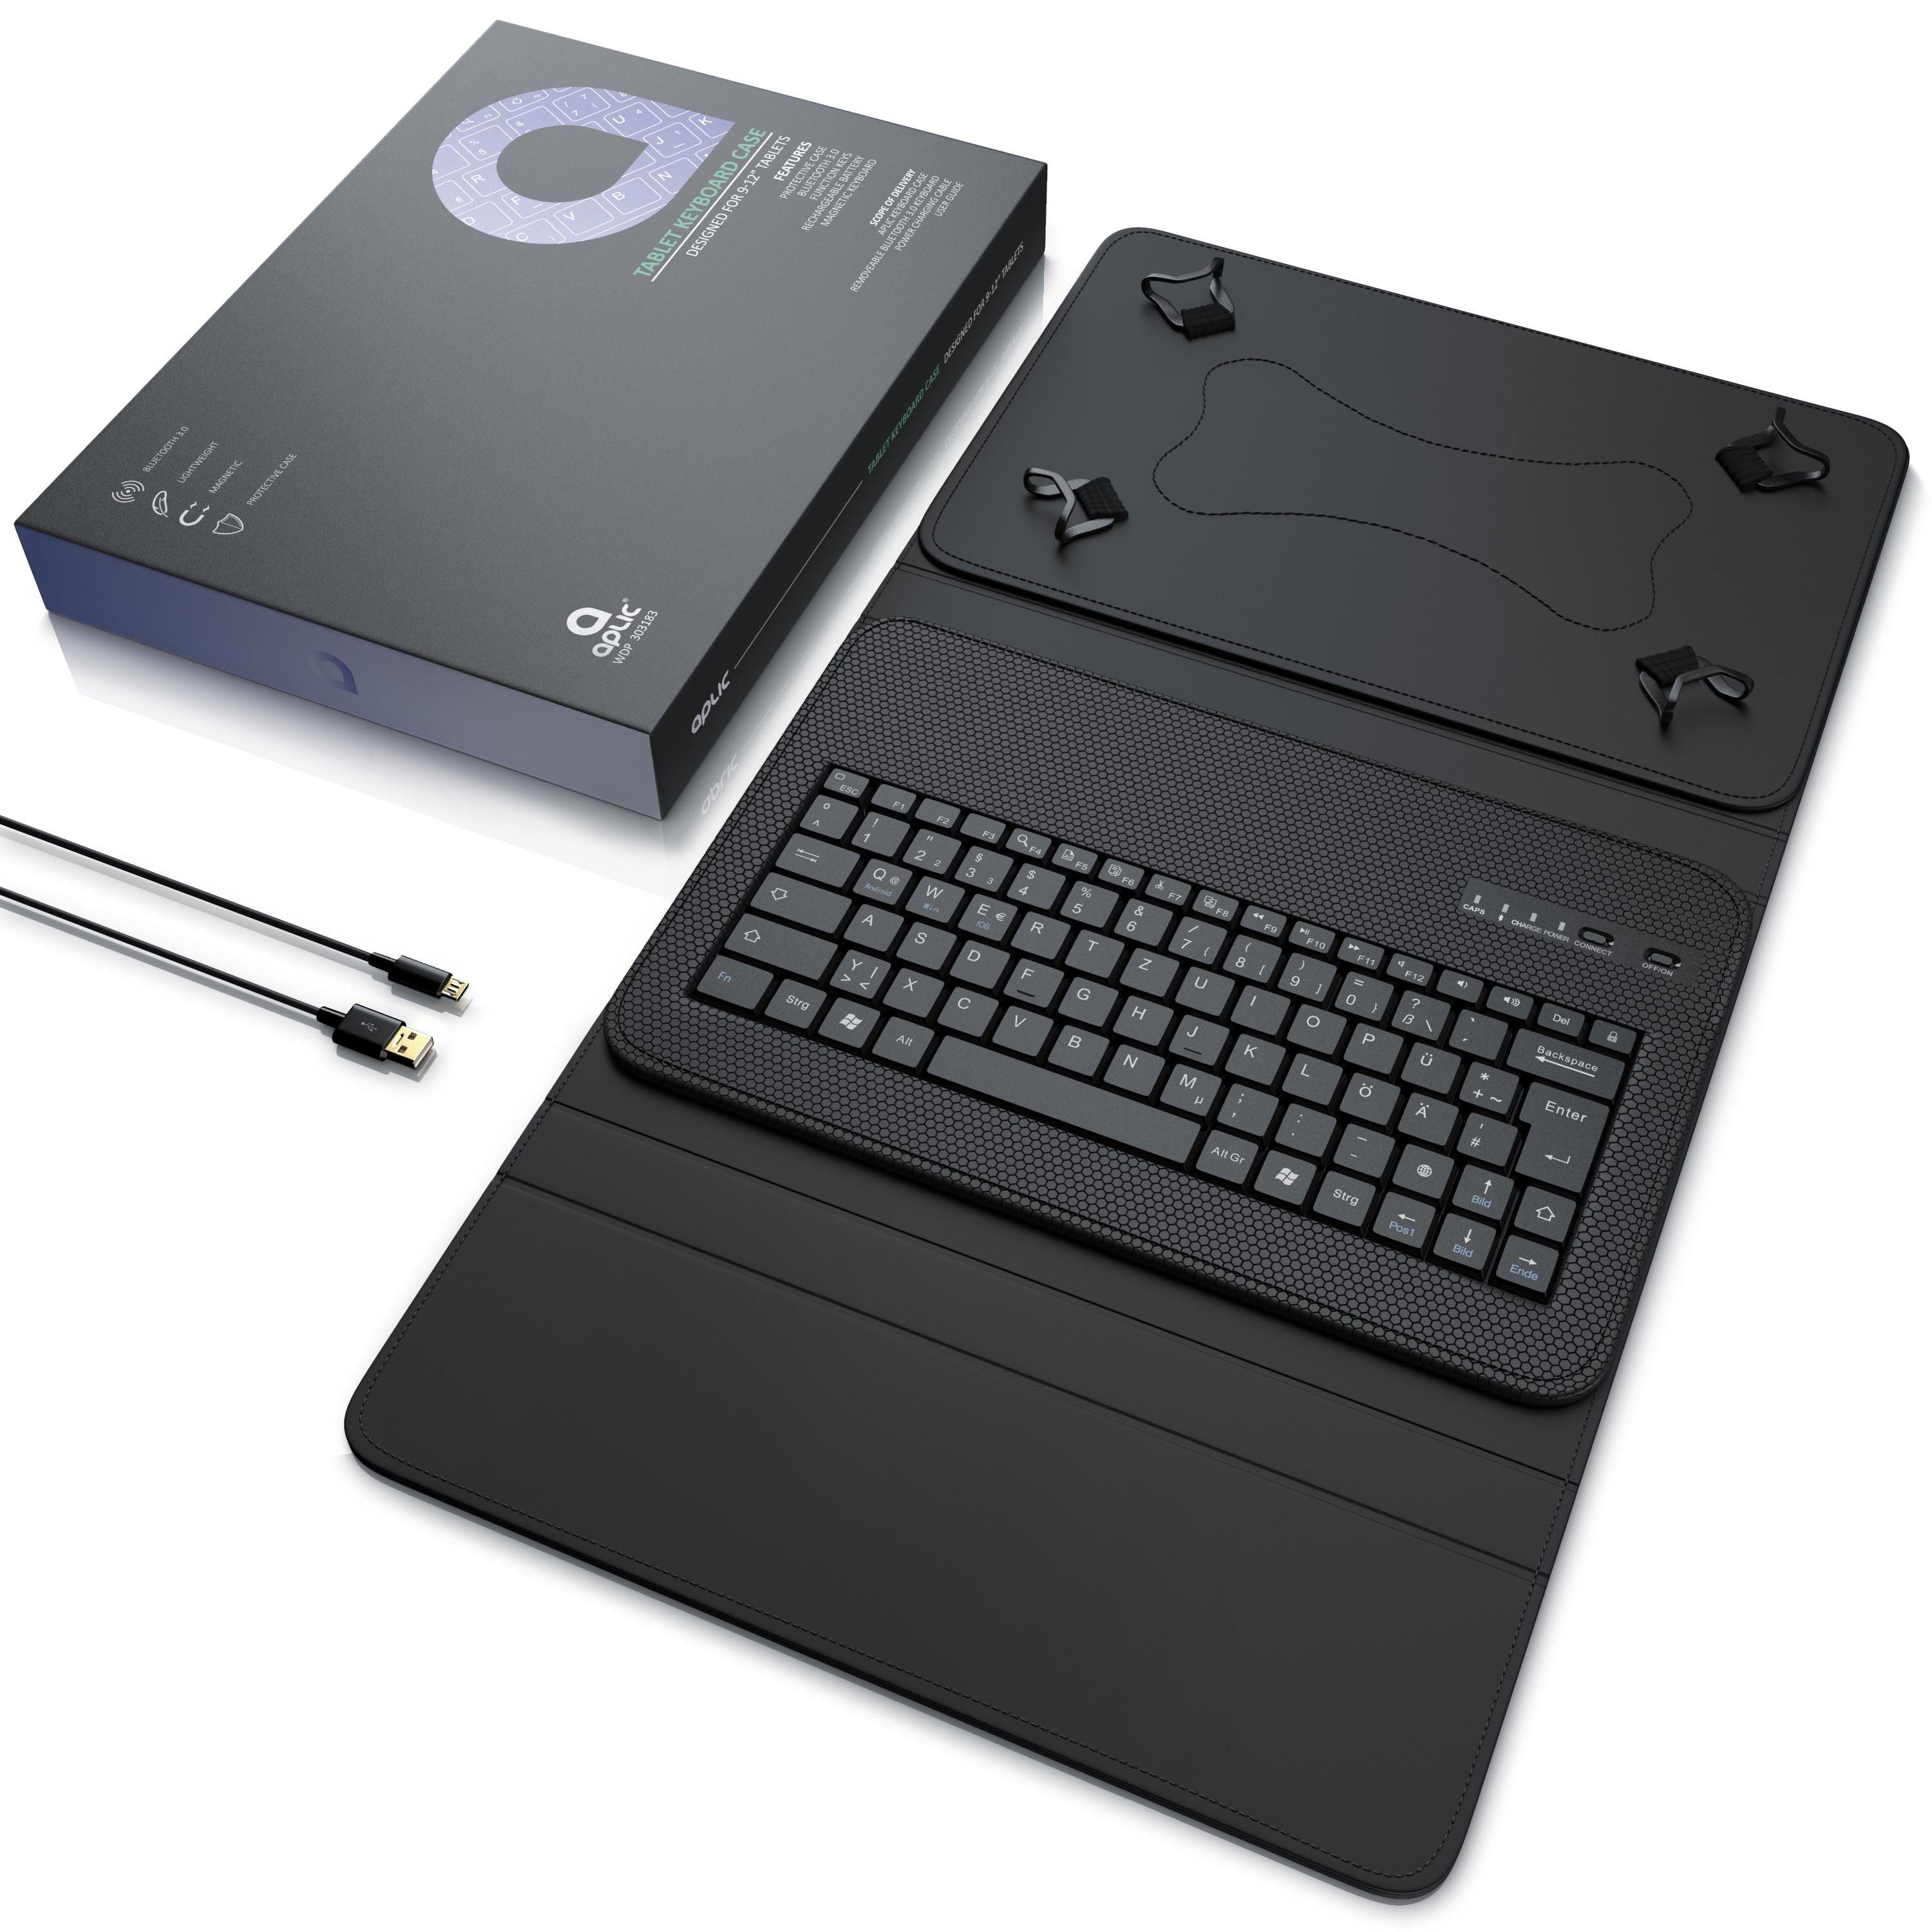 Aplic Kunststoffcase Tablets, (Bluetooth Keyboard QWERTZ) Für mit Tablet-Tastatur 9-12"